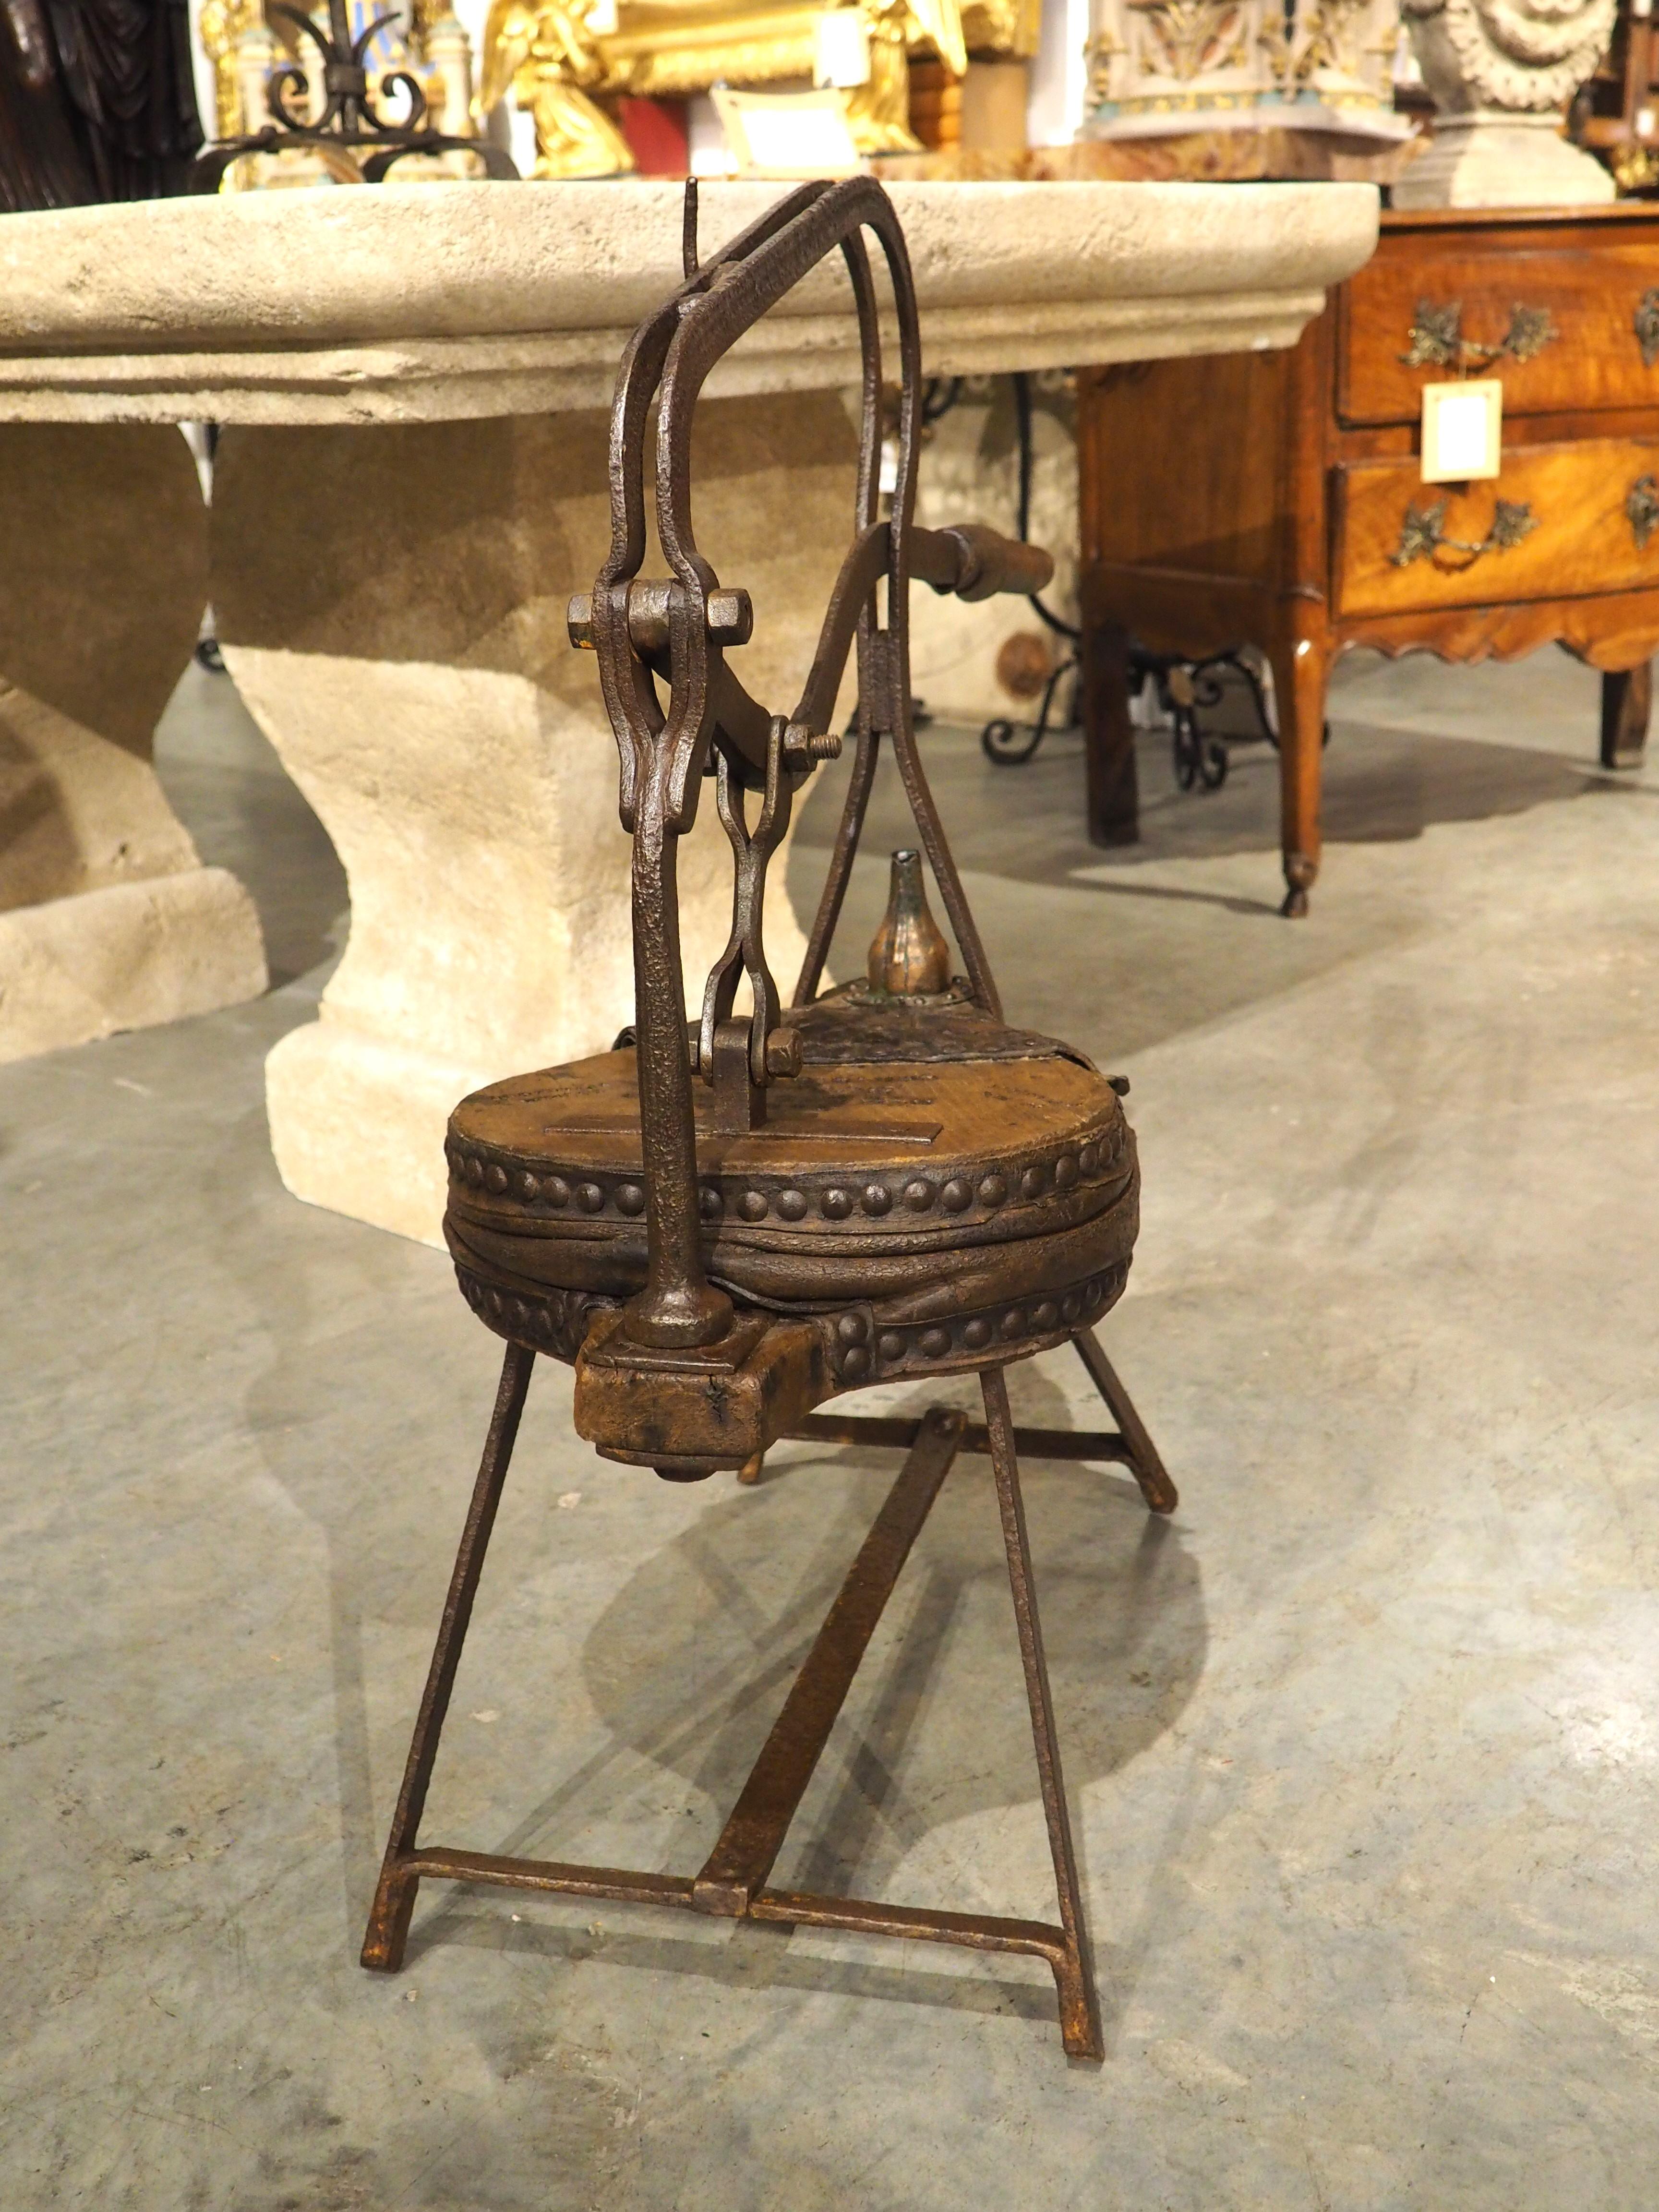 Dieser schmiedeeiserne Blasebalg, ein faszinierendes Instrument aus dem 19. Jahrhundert, das in Frankreich als soufflet de barrique bekannt ist, wurde einst auf einem Weingut in Bordeaux verwendet. Der hölzerne Blasebalg ist mit gegerbtem Leder